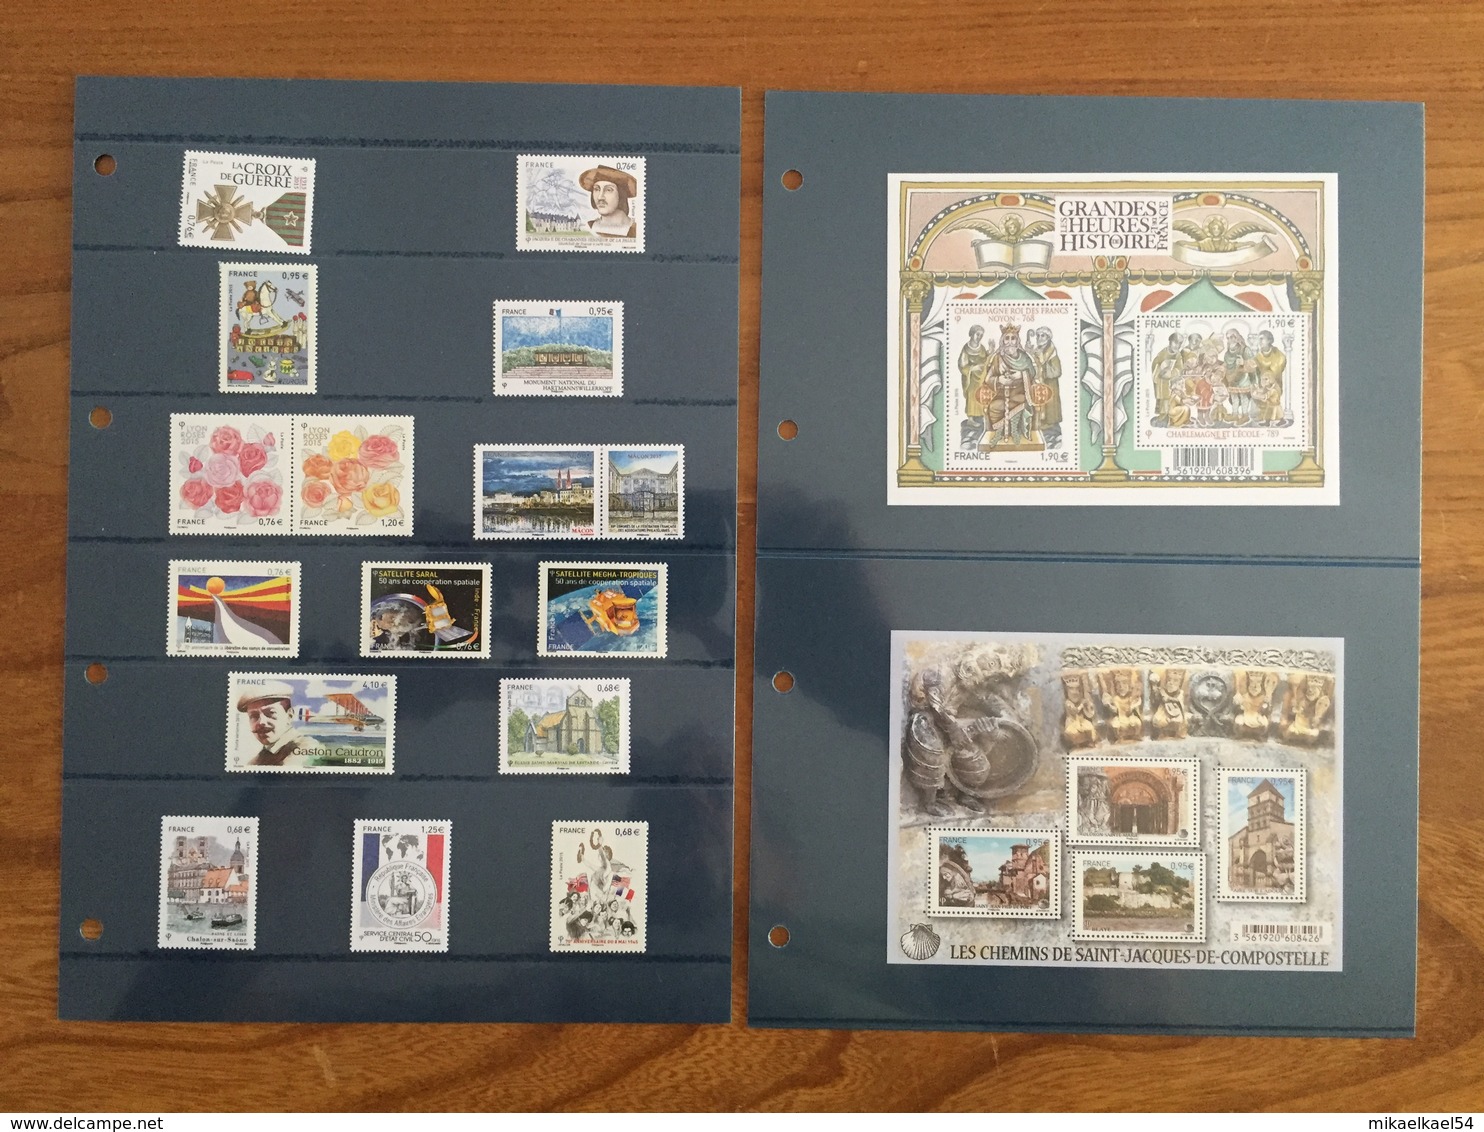 Collection Philatélique, Pochettes Trimestrielles - 2015 - timbres neufs MNH **